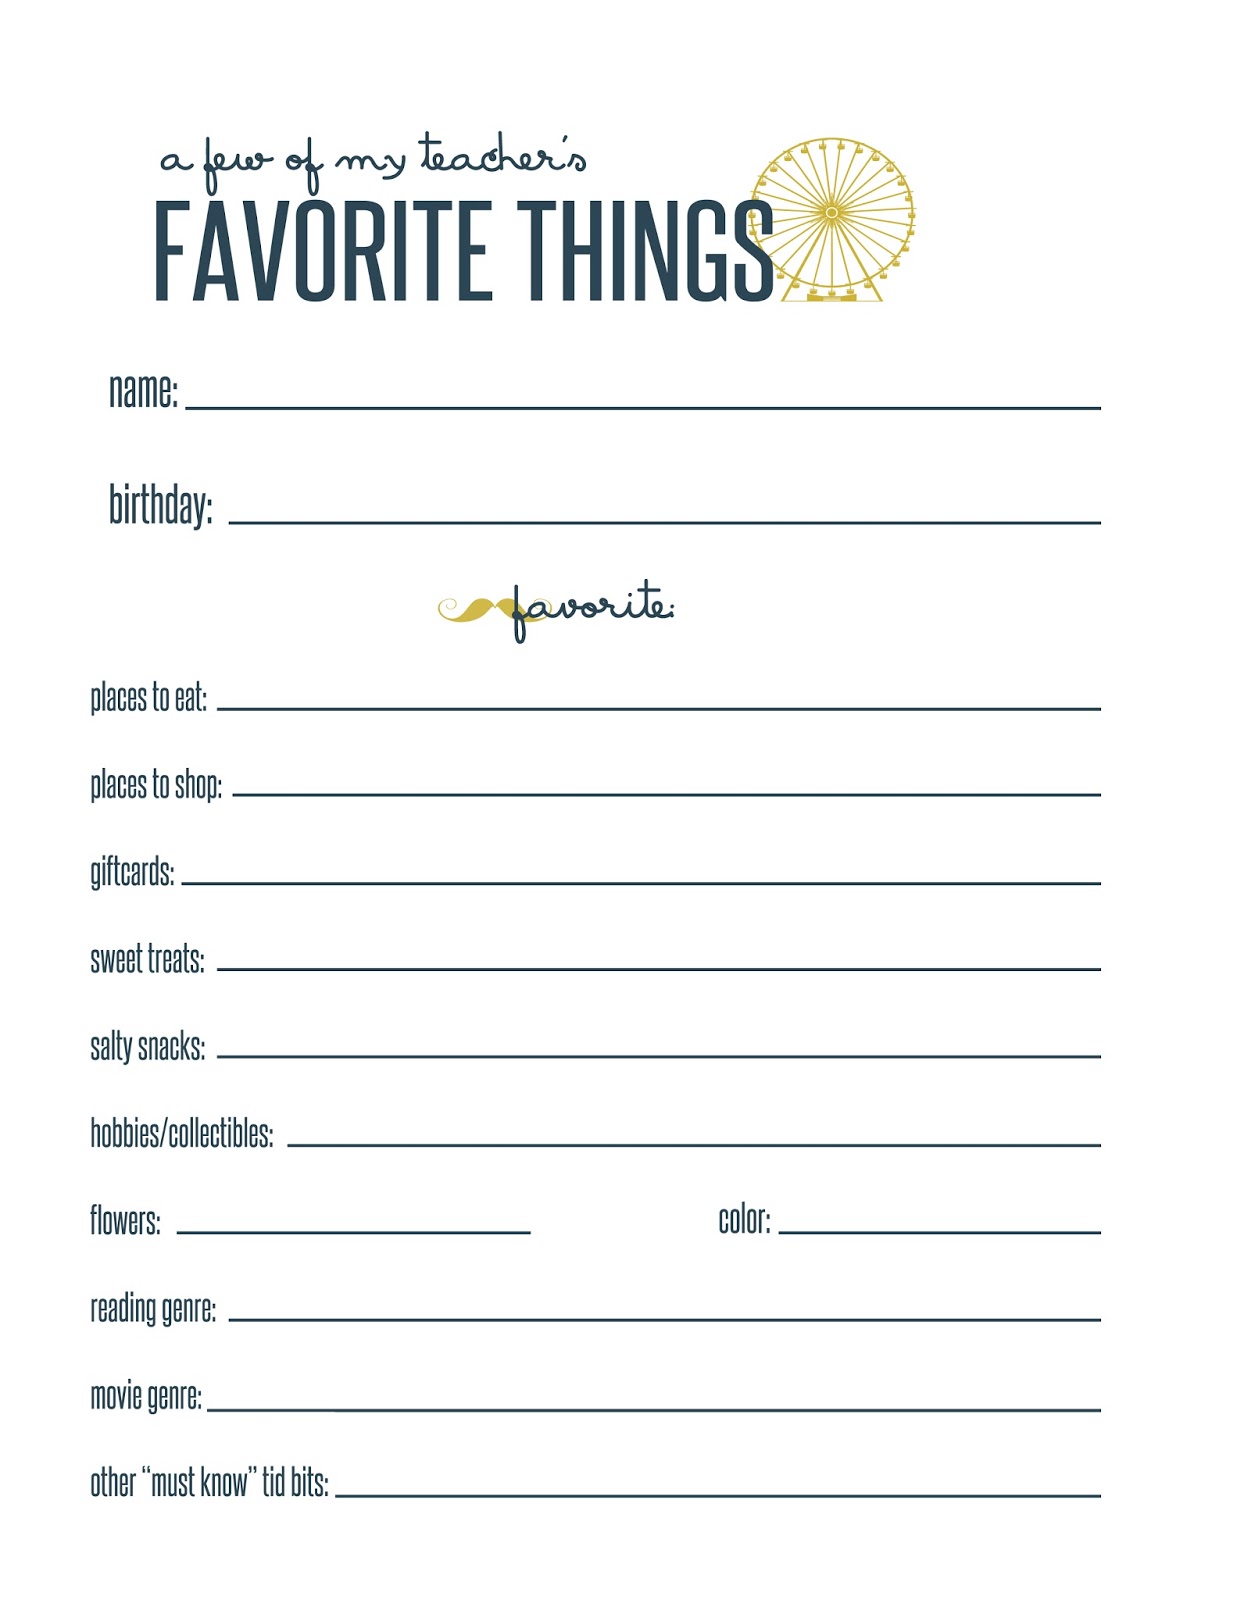 printable-employee-favorite-things-list